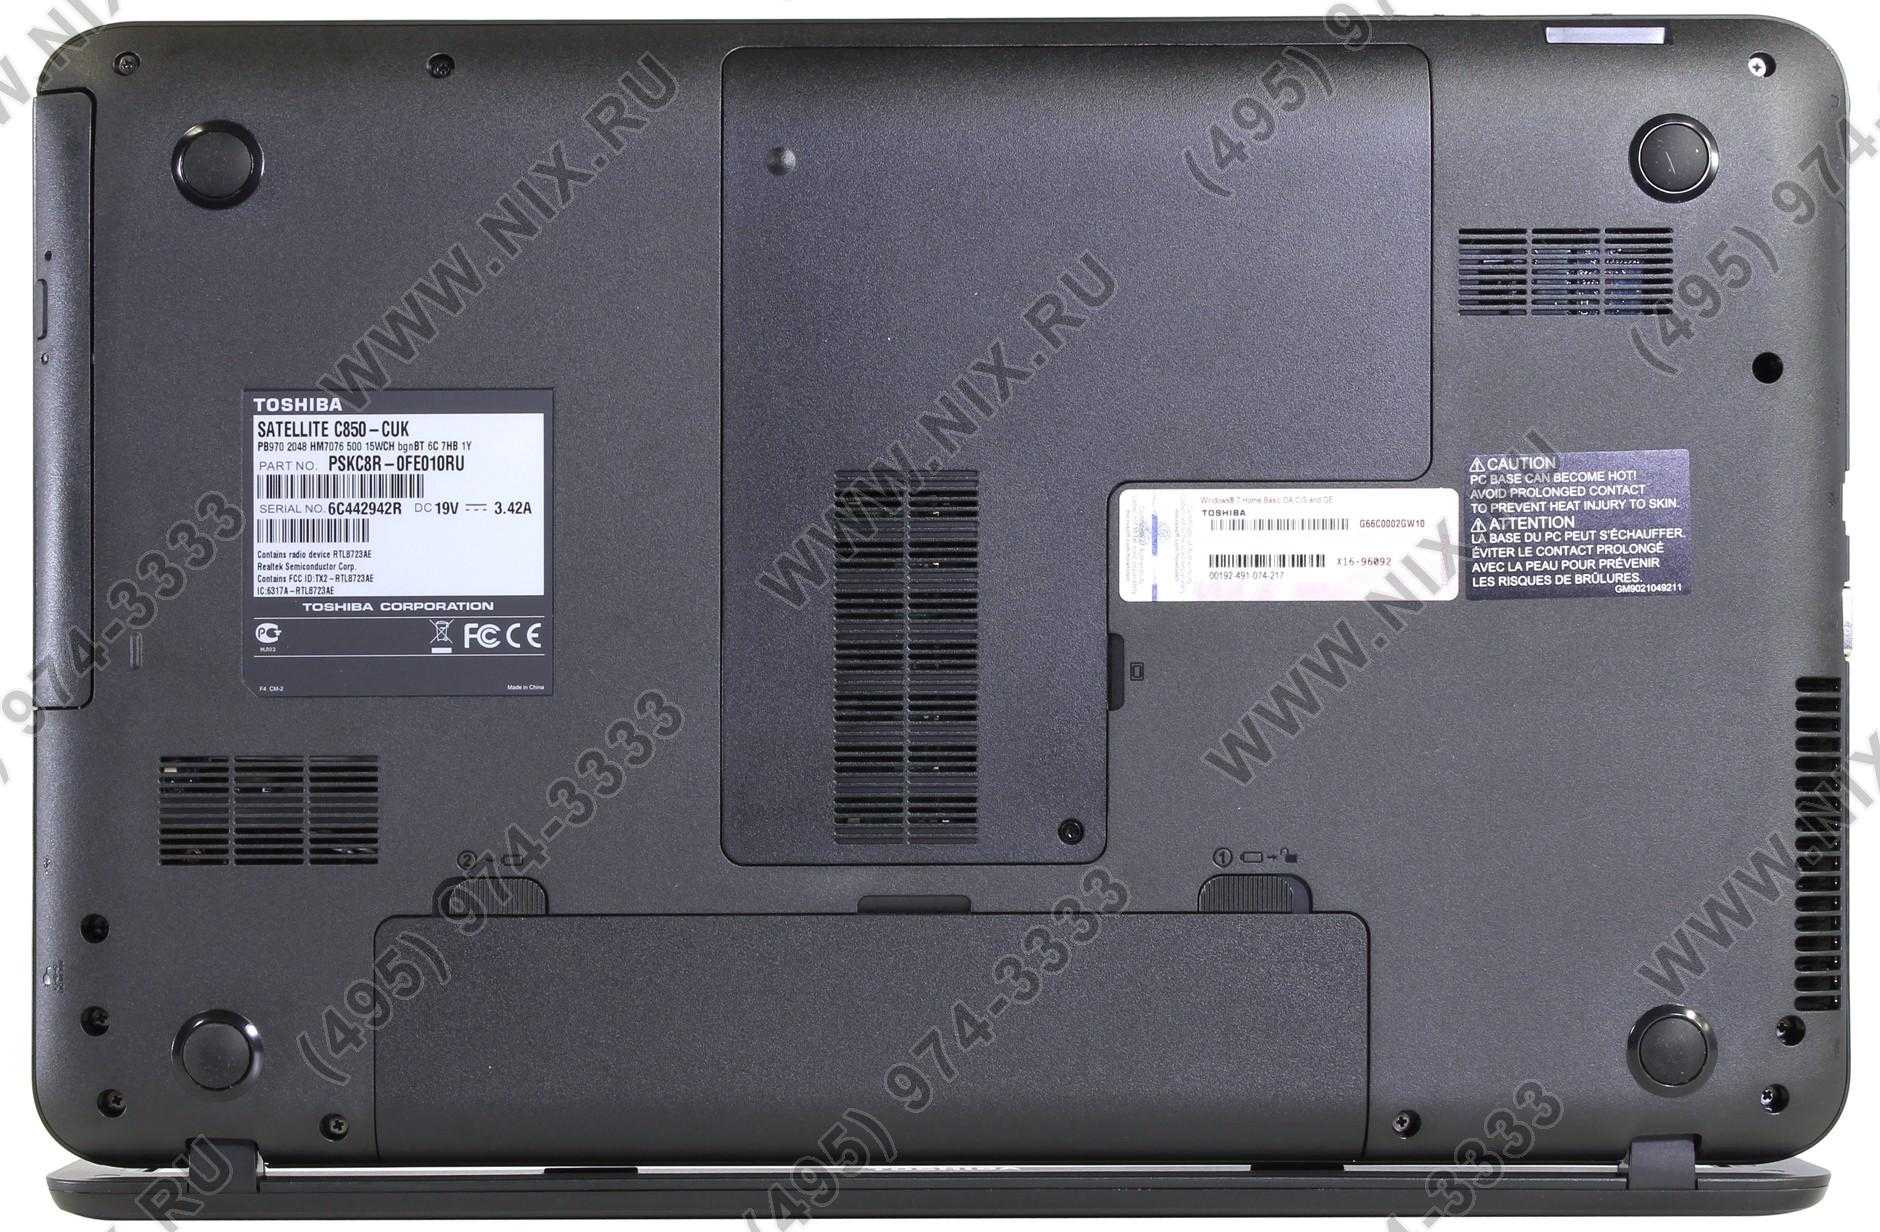 Ноутбук Toshiba Satellite C850 (С830E5ADL) - подробные характеристики обзоры видео фото Цены в интернет-магазинах где можно купить ноутбук Toshiba Satellite C850 (С830E5ADL)